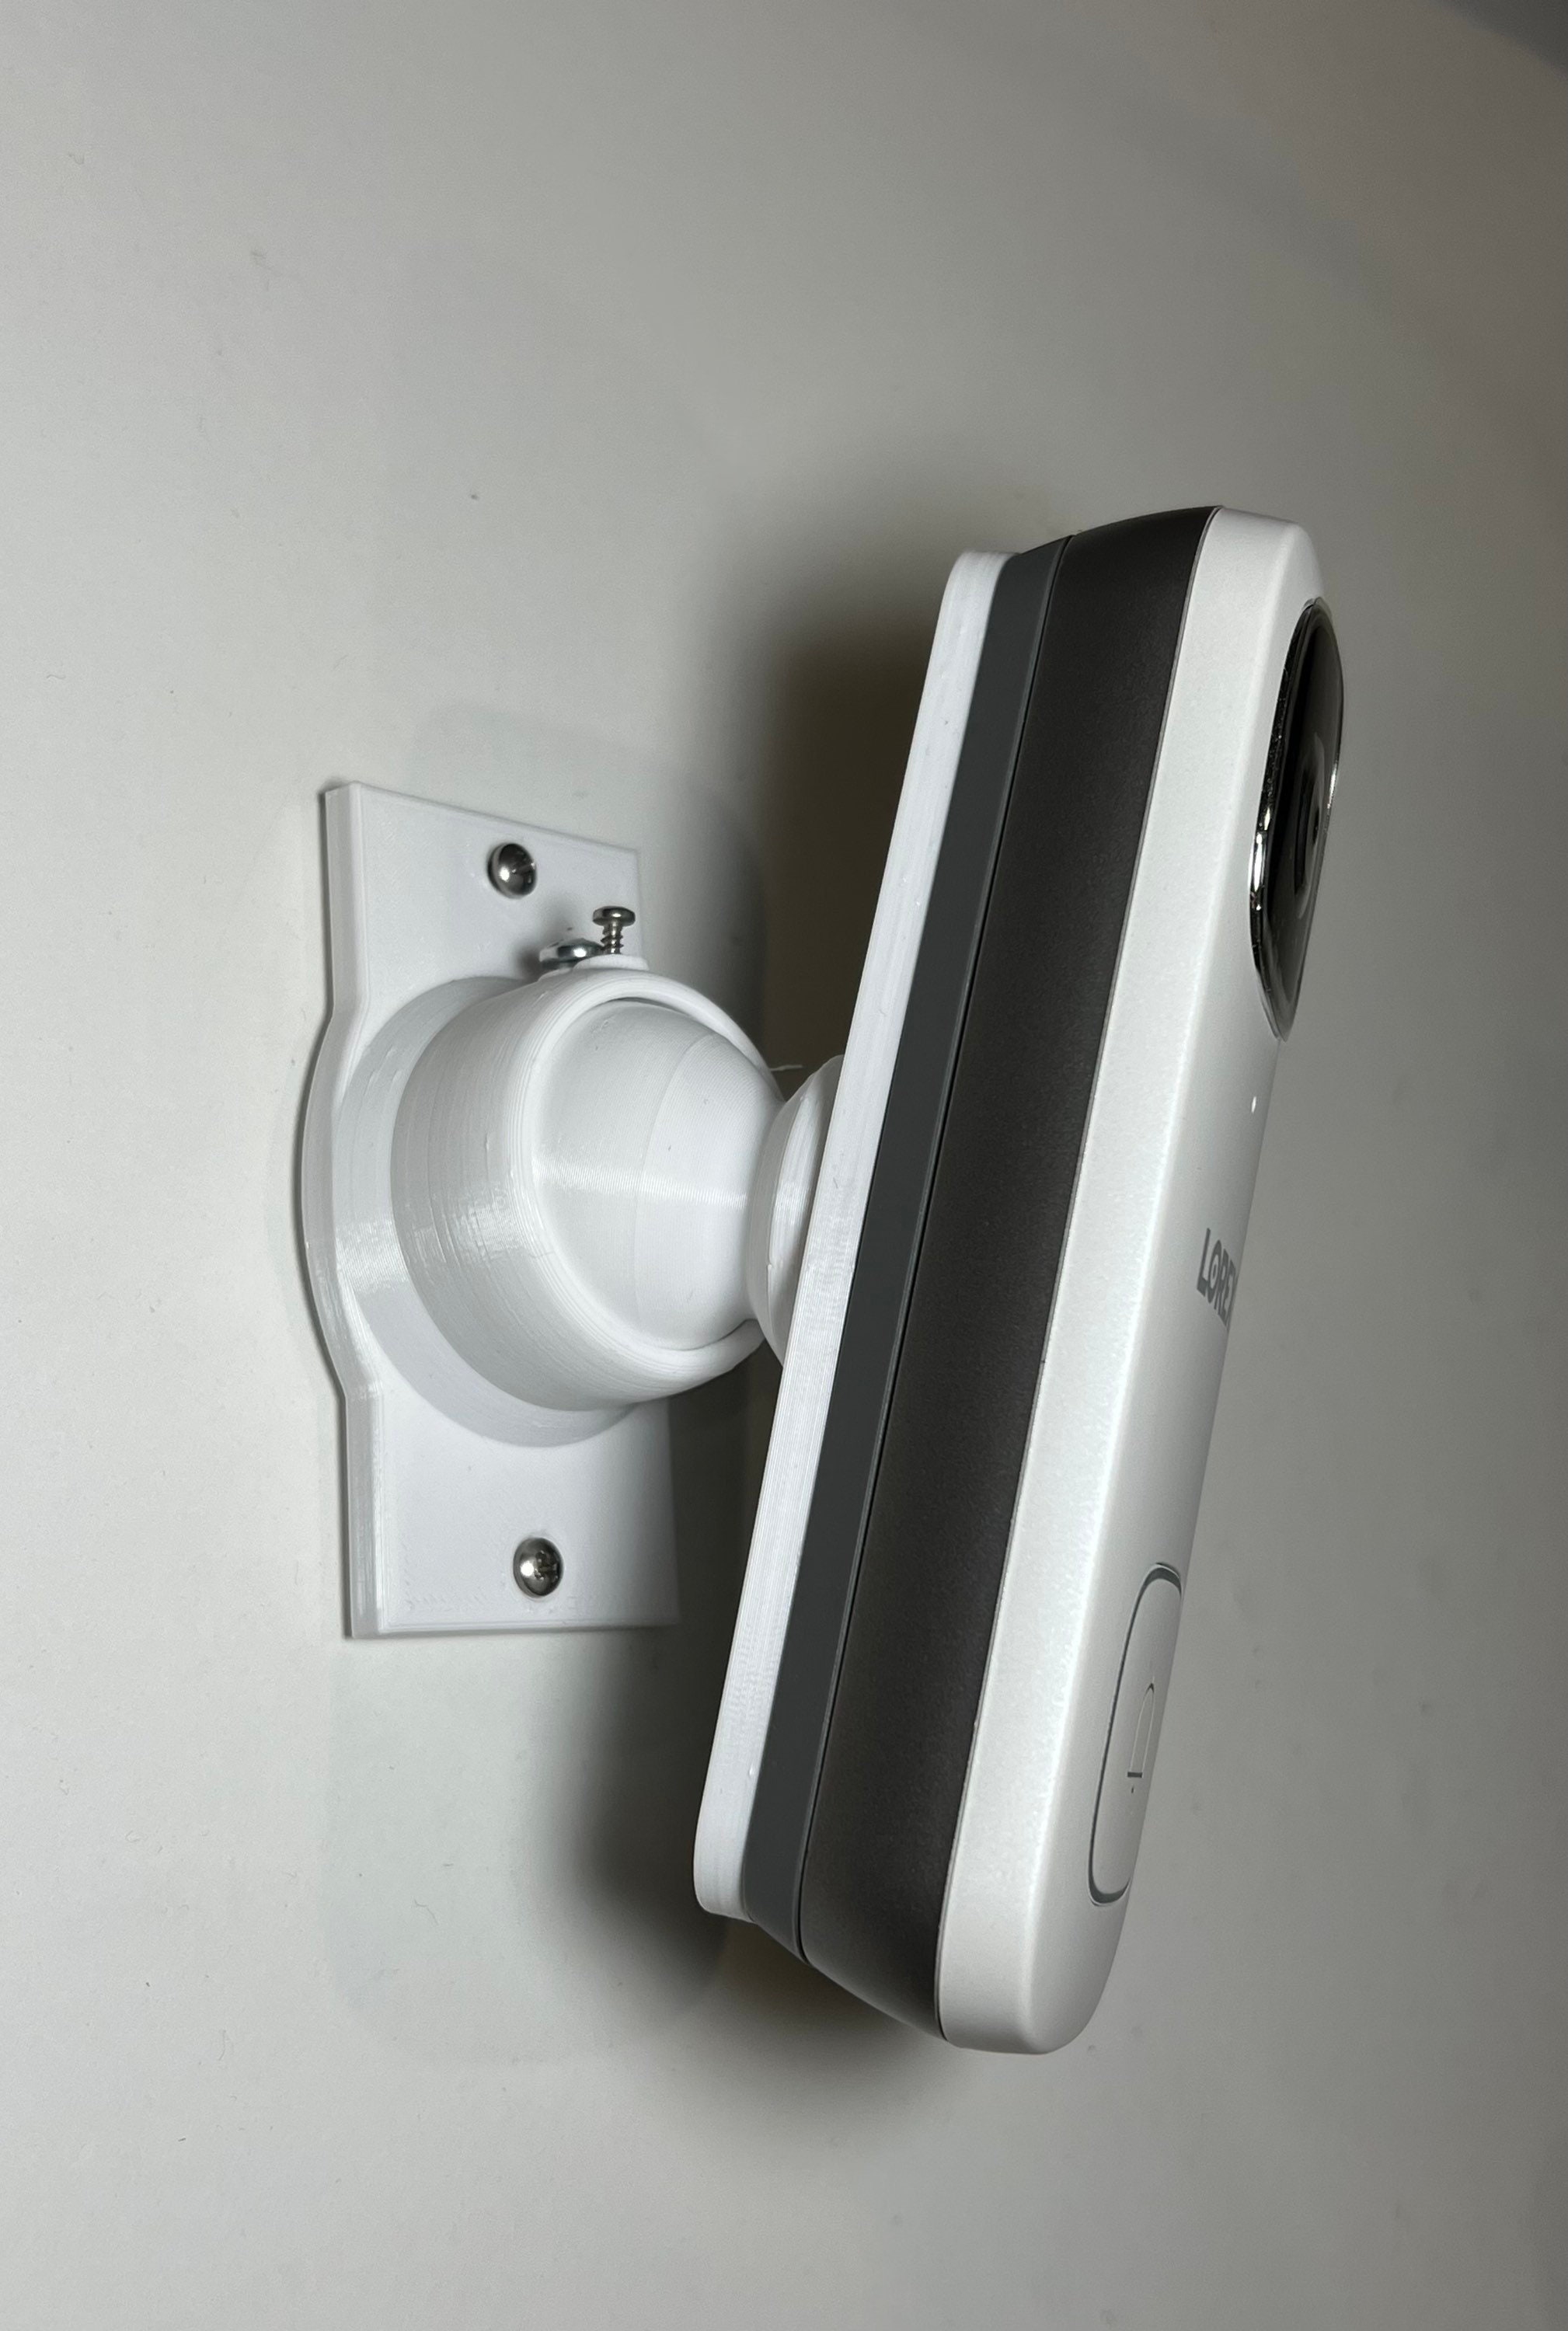 Ring Doorbell Wired 2021 90 Degree Swivel Mount Bracket Adjustable Tilt  Angle Rotate From 15deg to 90deg. Horizontal & Vertical Adjustment 